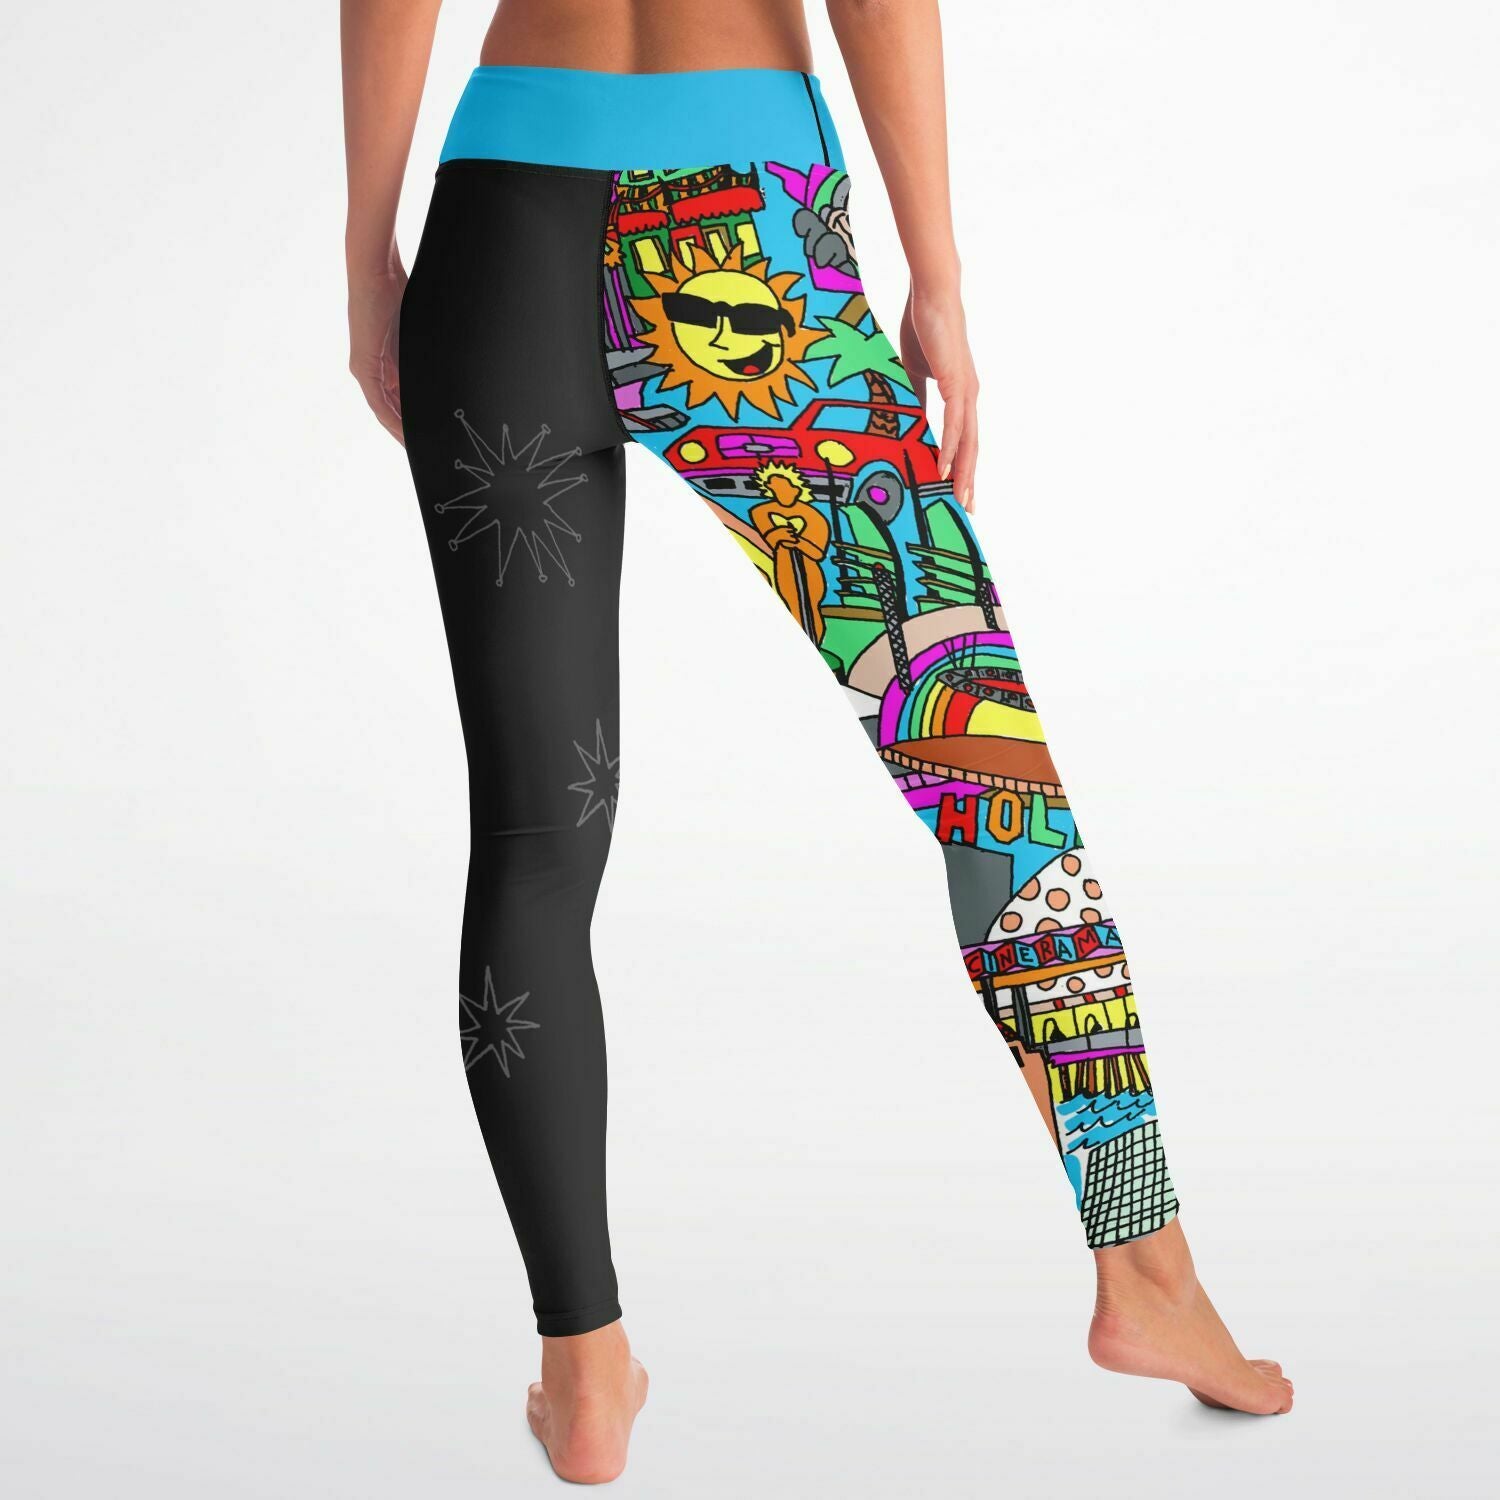 Amazing leggings from alo yoga - large  #liketkit  @liketoknow.it